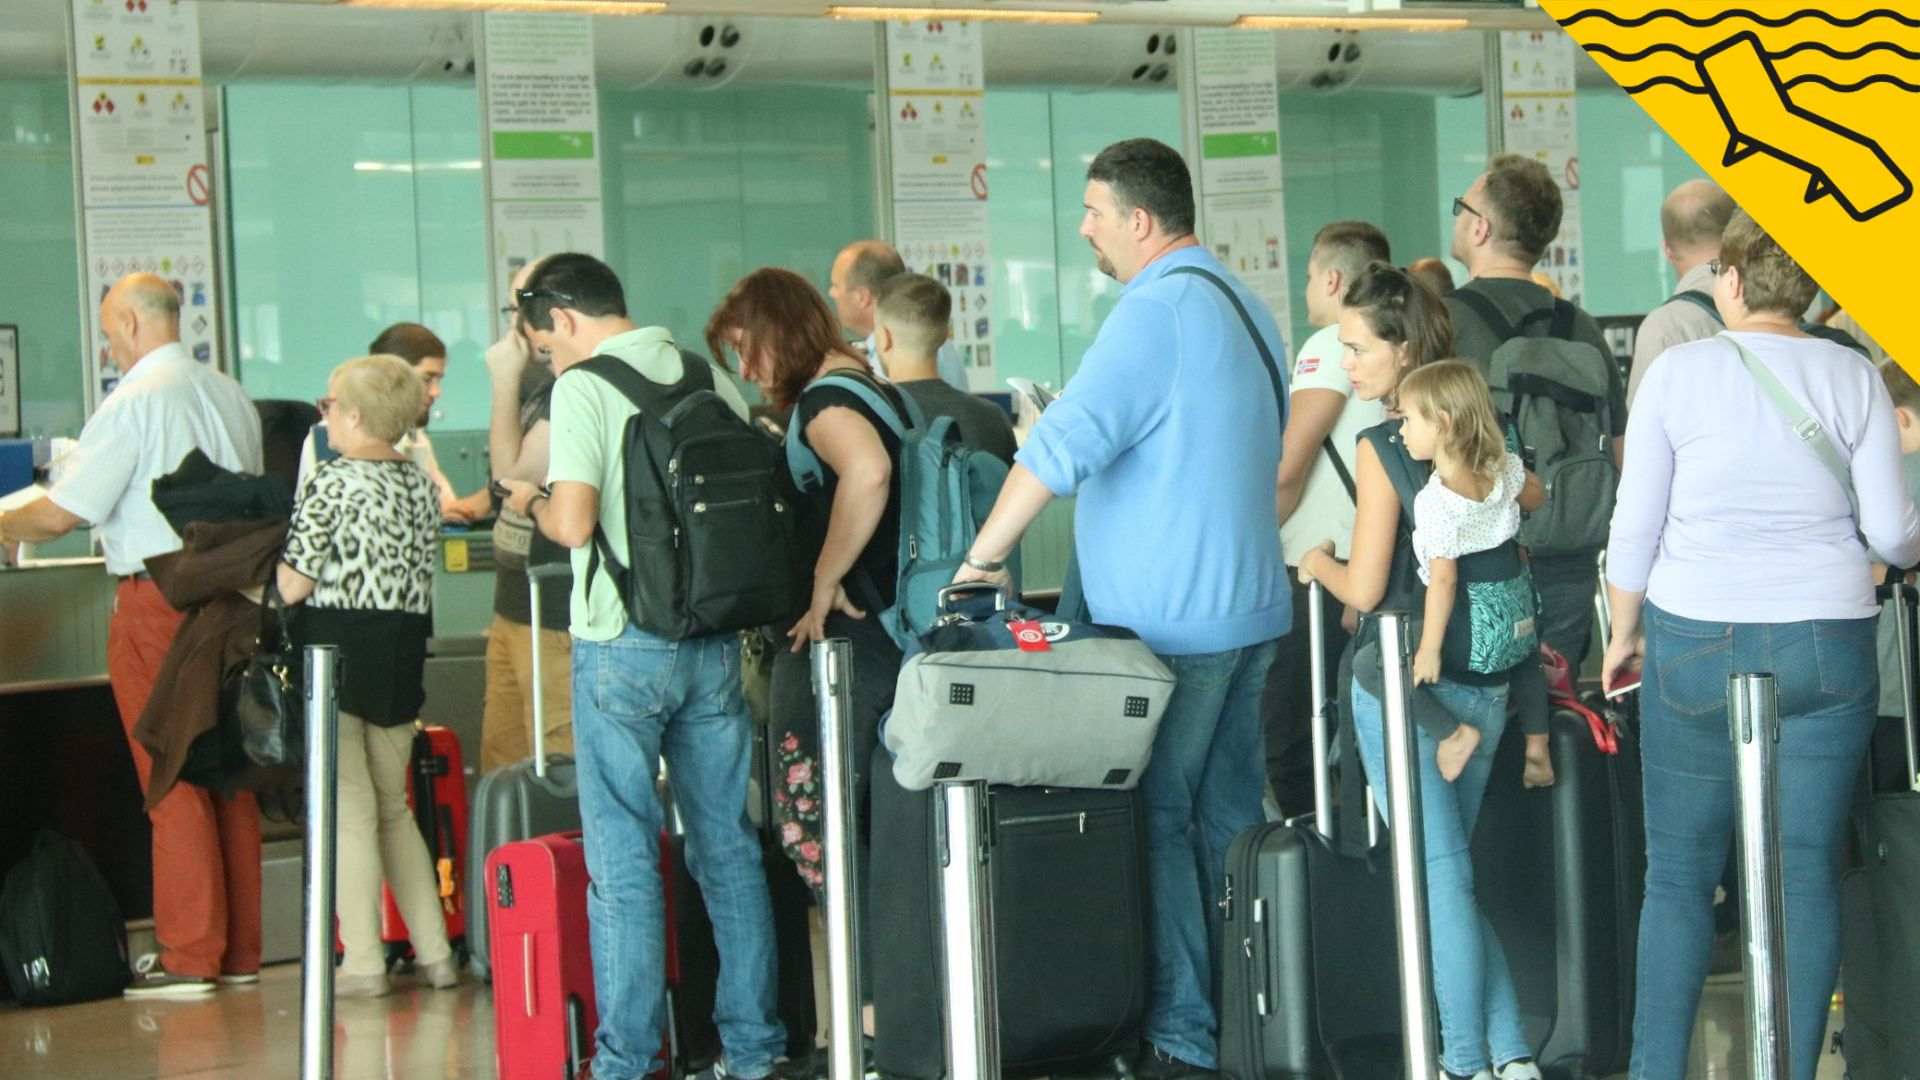 De Barcelona a Istanbul: els aeroports més estressants d'Europa